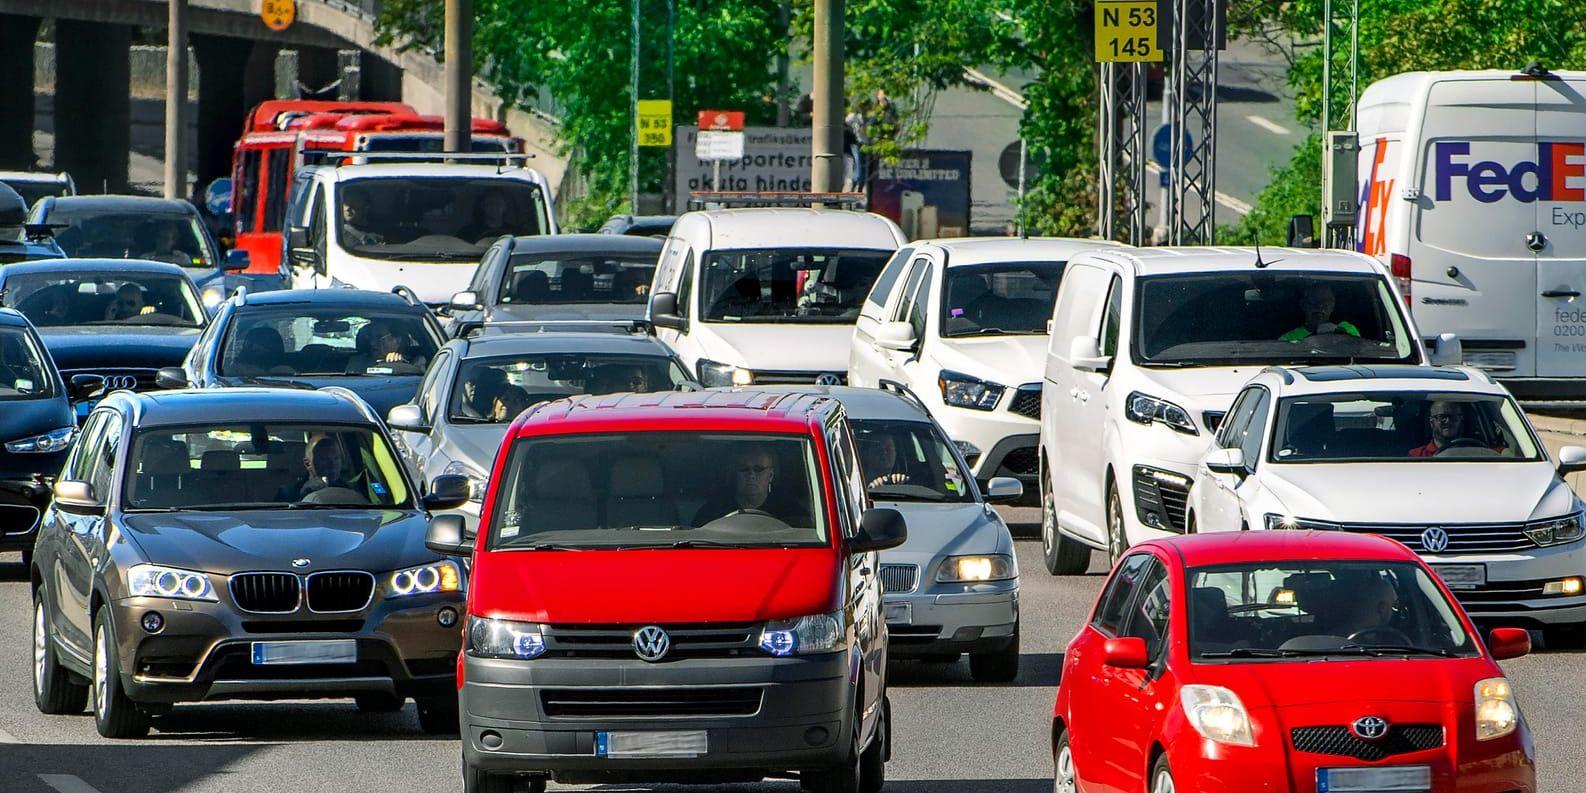 Biltrafiken väntas öka med 18 procent mellan 2014 och 2030 enligt Trafikverket. Arkivbild.